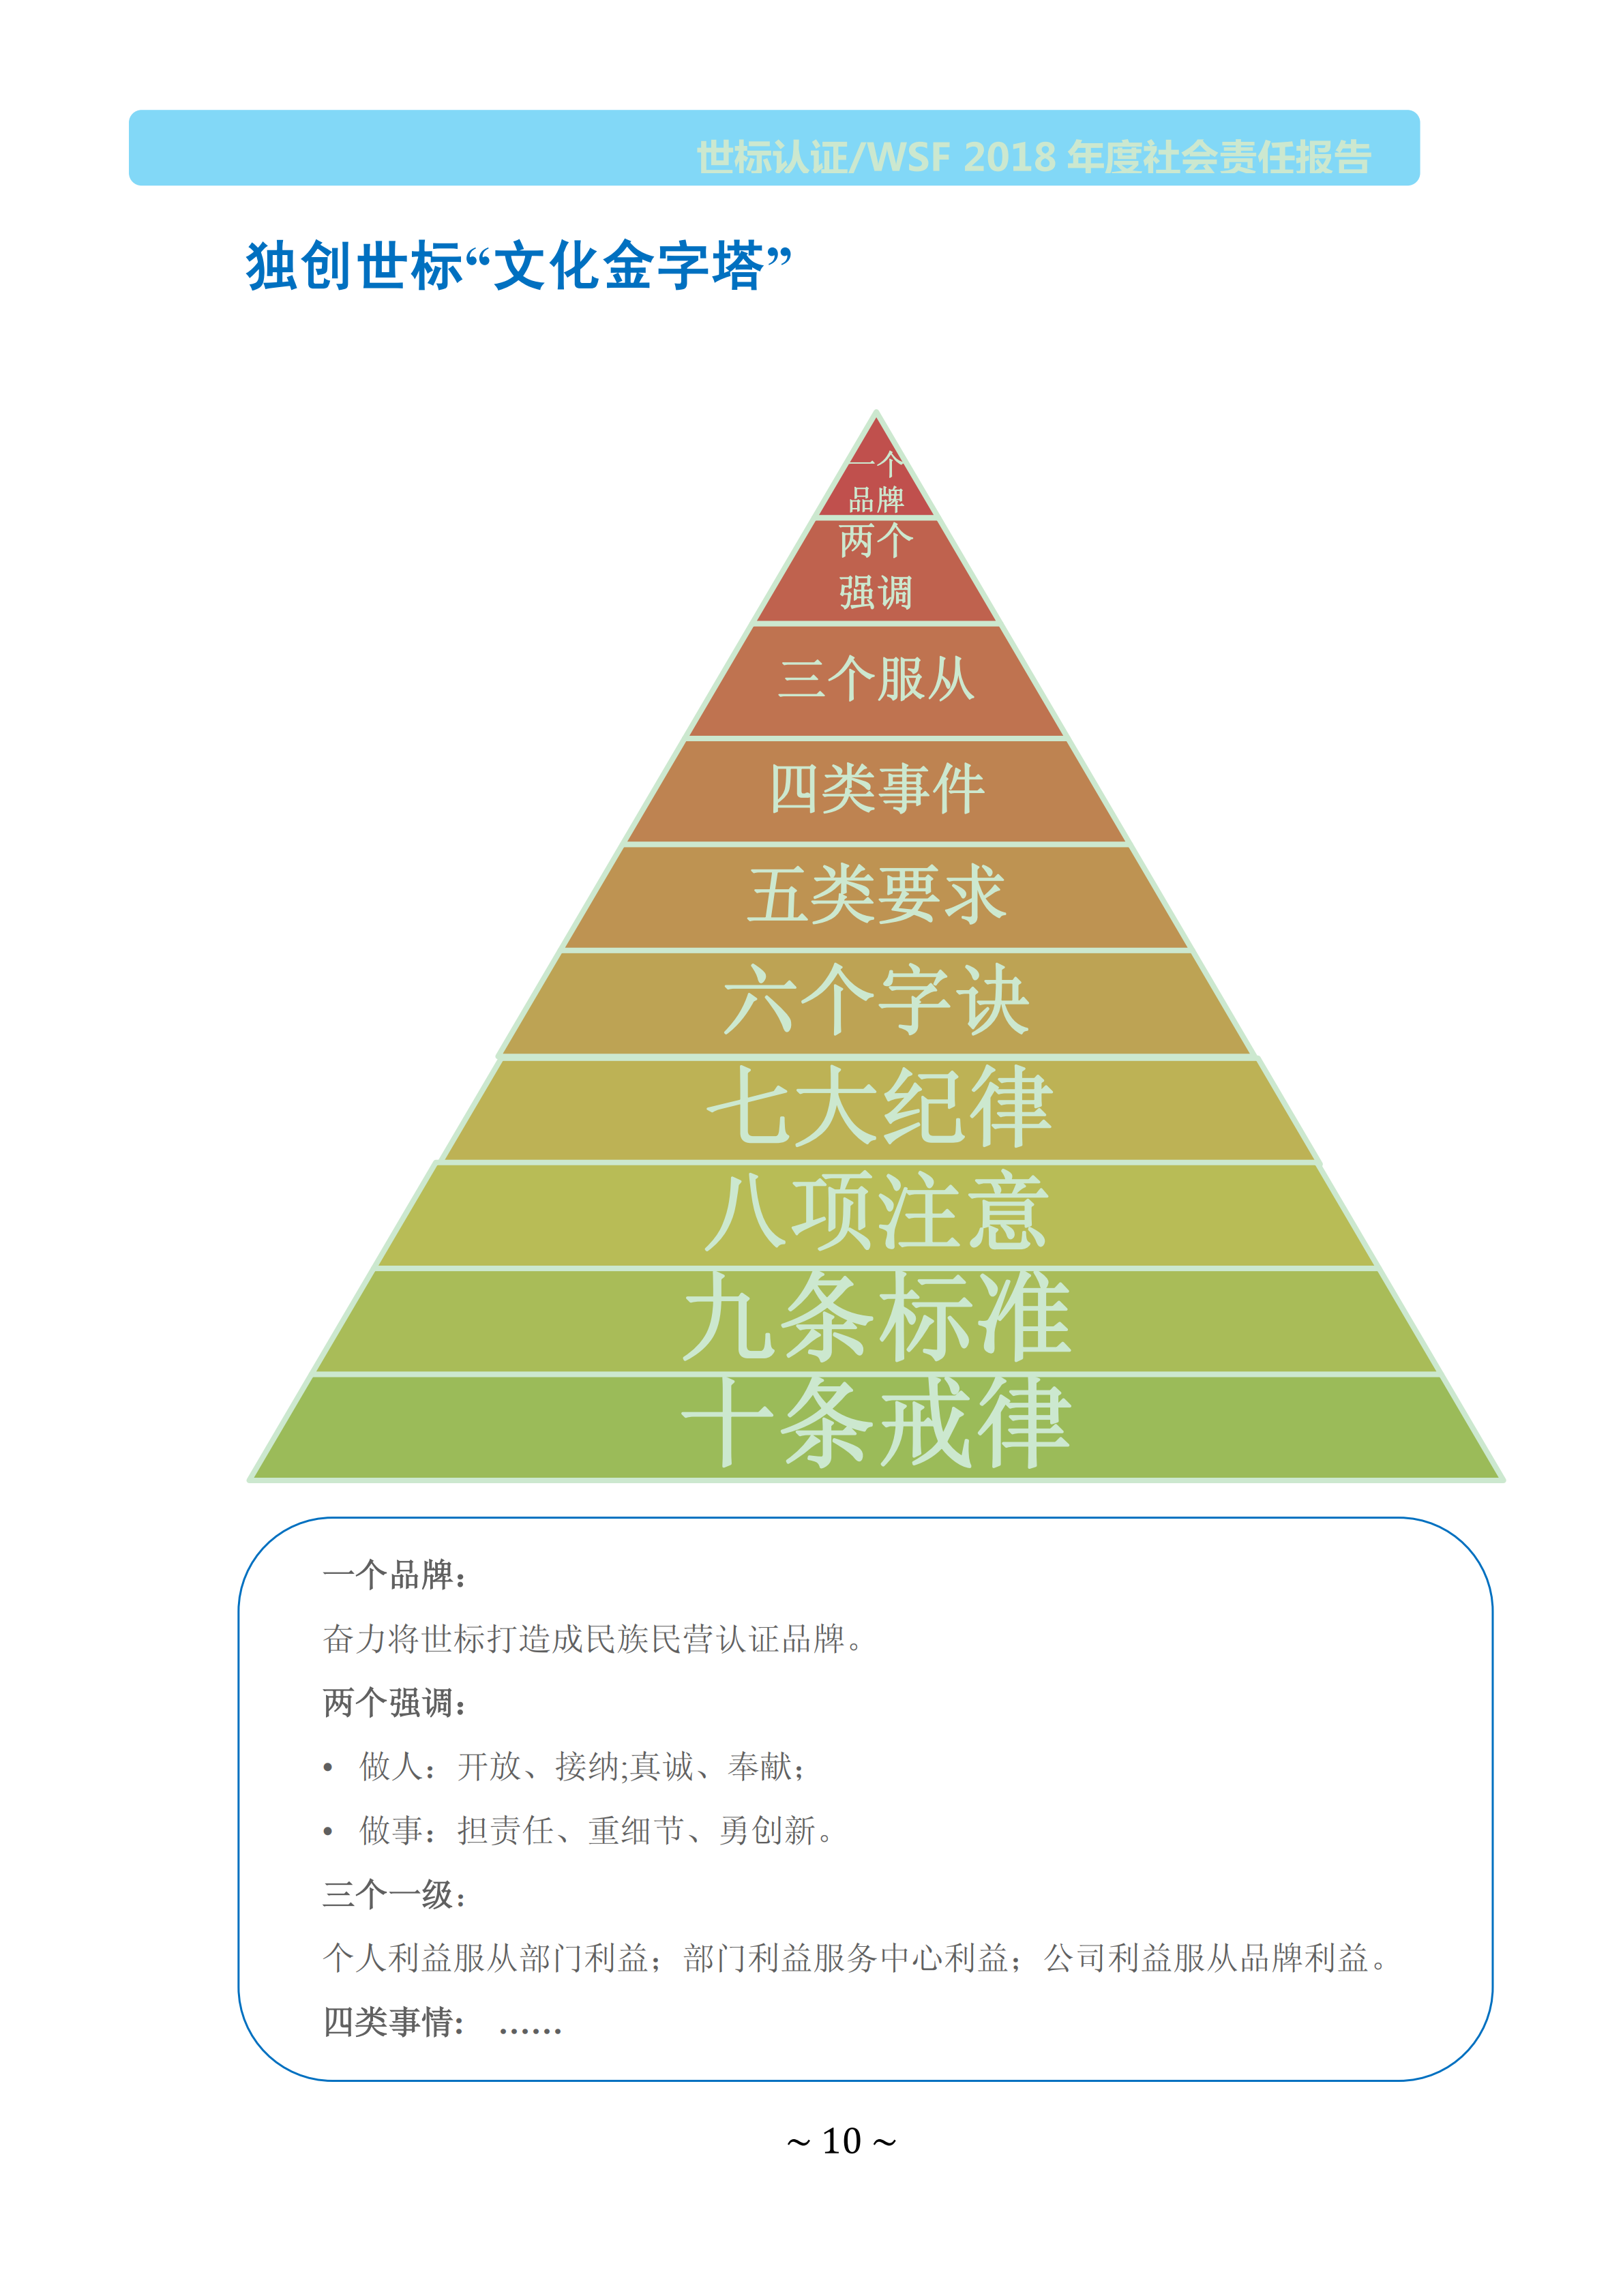  北京世标2018年社会责任报告(图10)